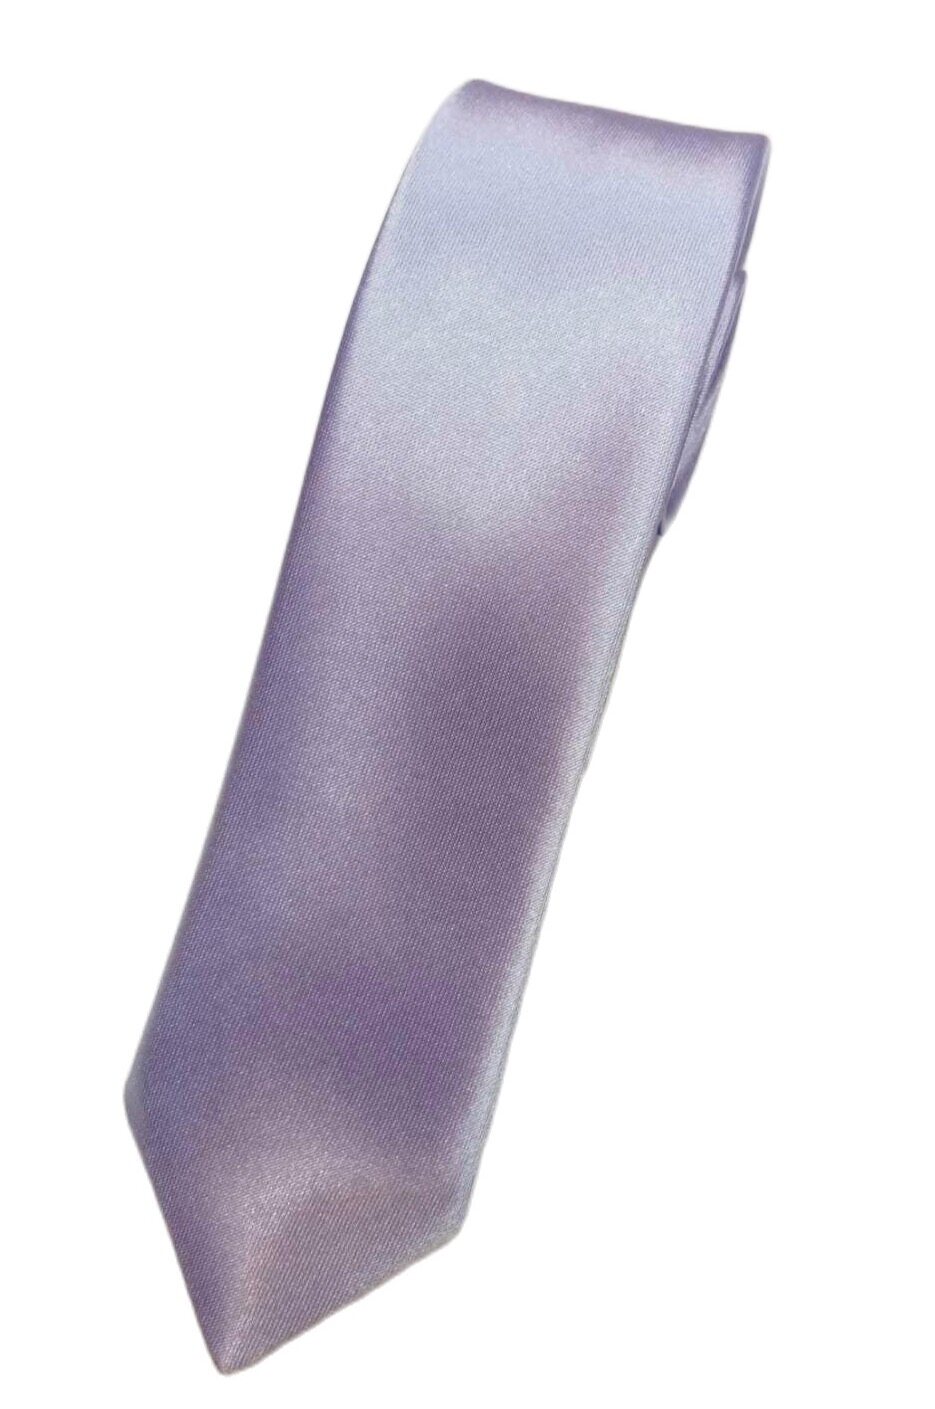 เนคไทผ้าเงาสกรีนลายขนาดเล็ก 4.5 X 150 cm สีม่วงอ่อนแบบผูกเอง ไม่มียี่ห้อ